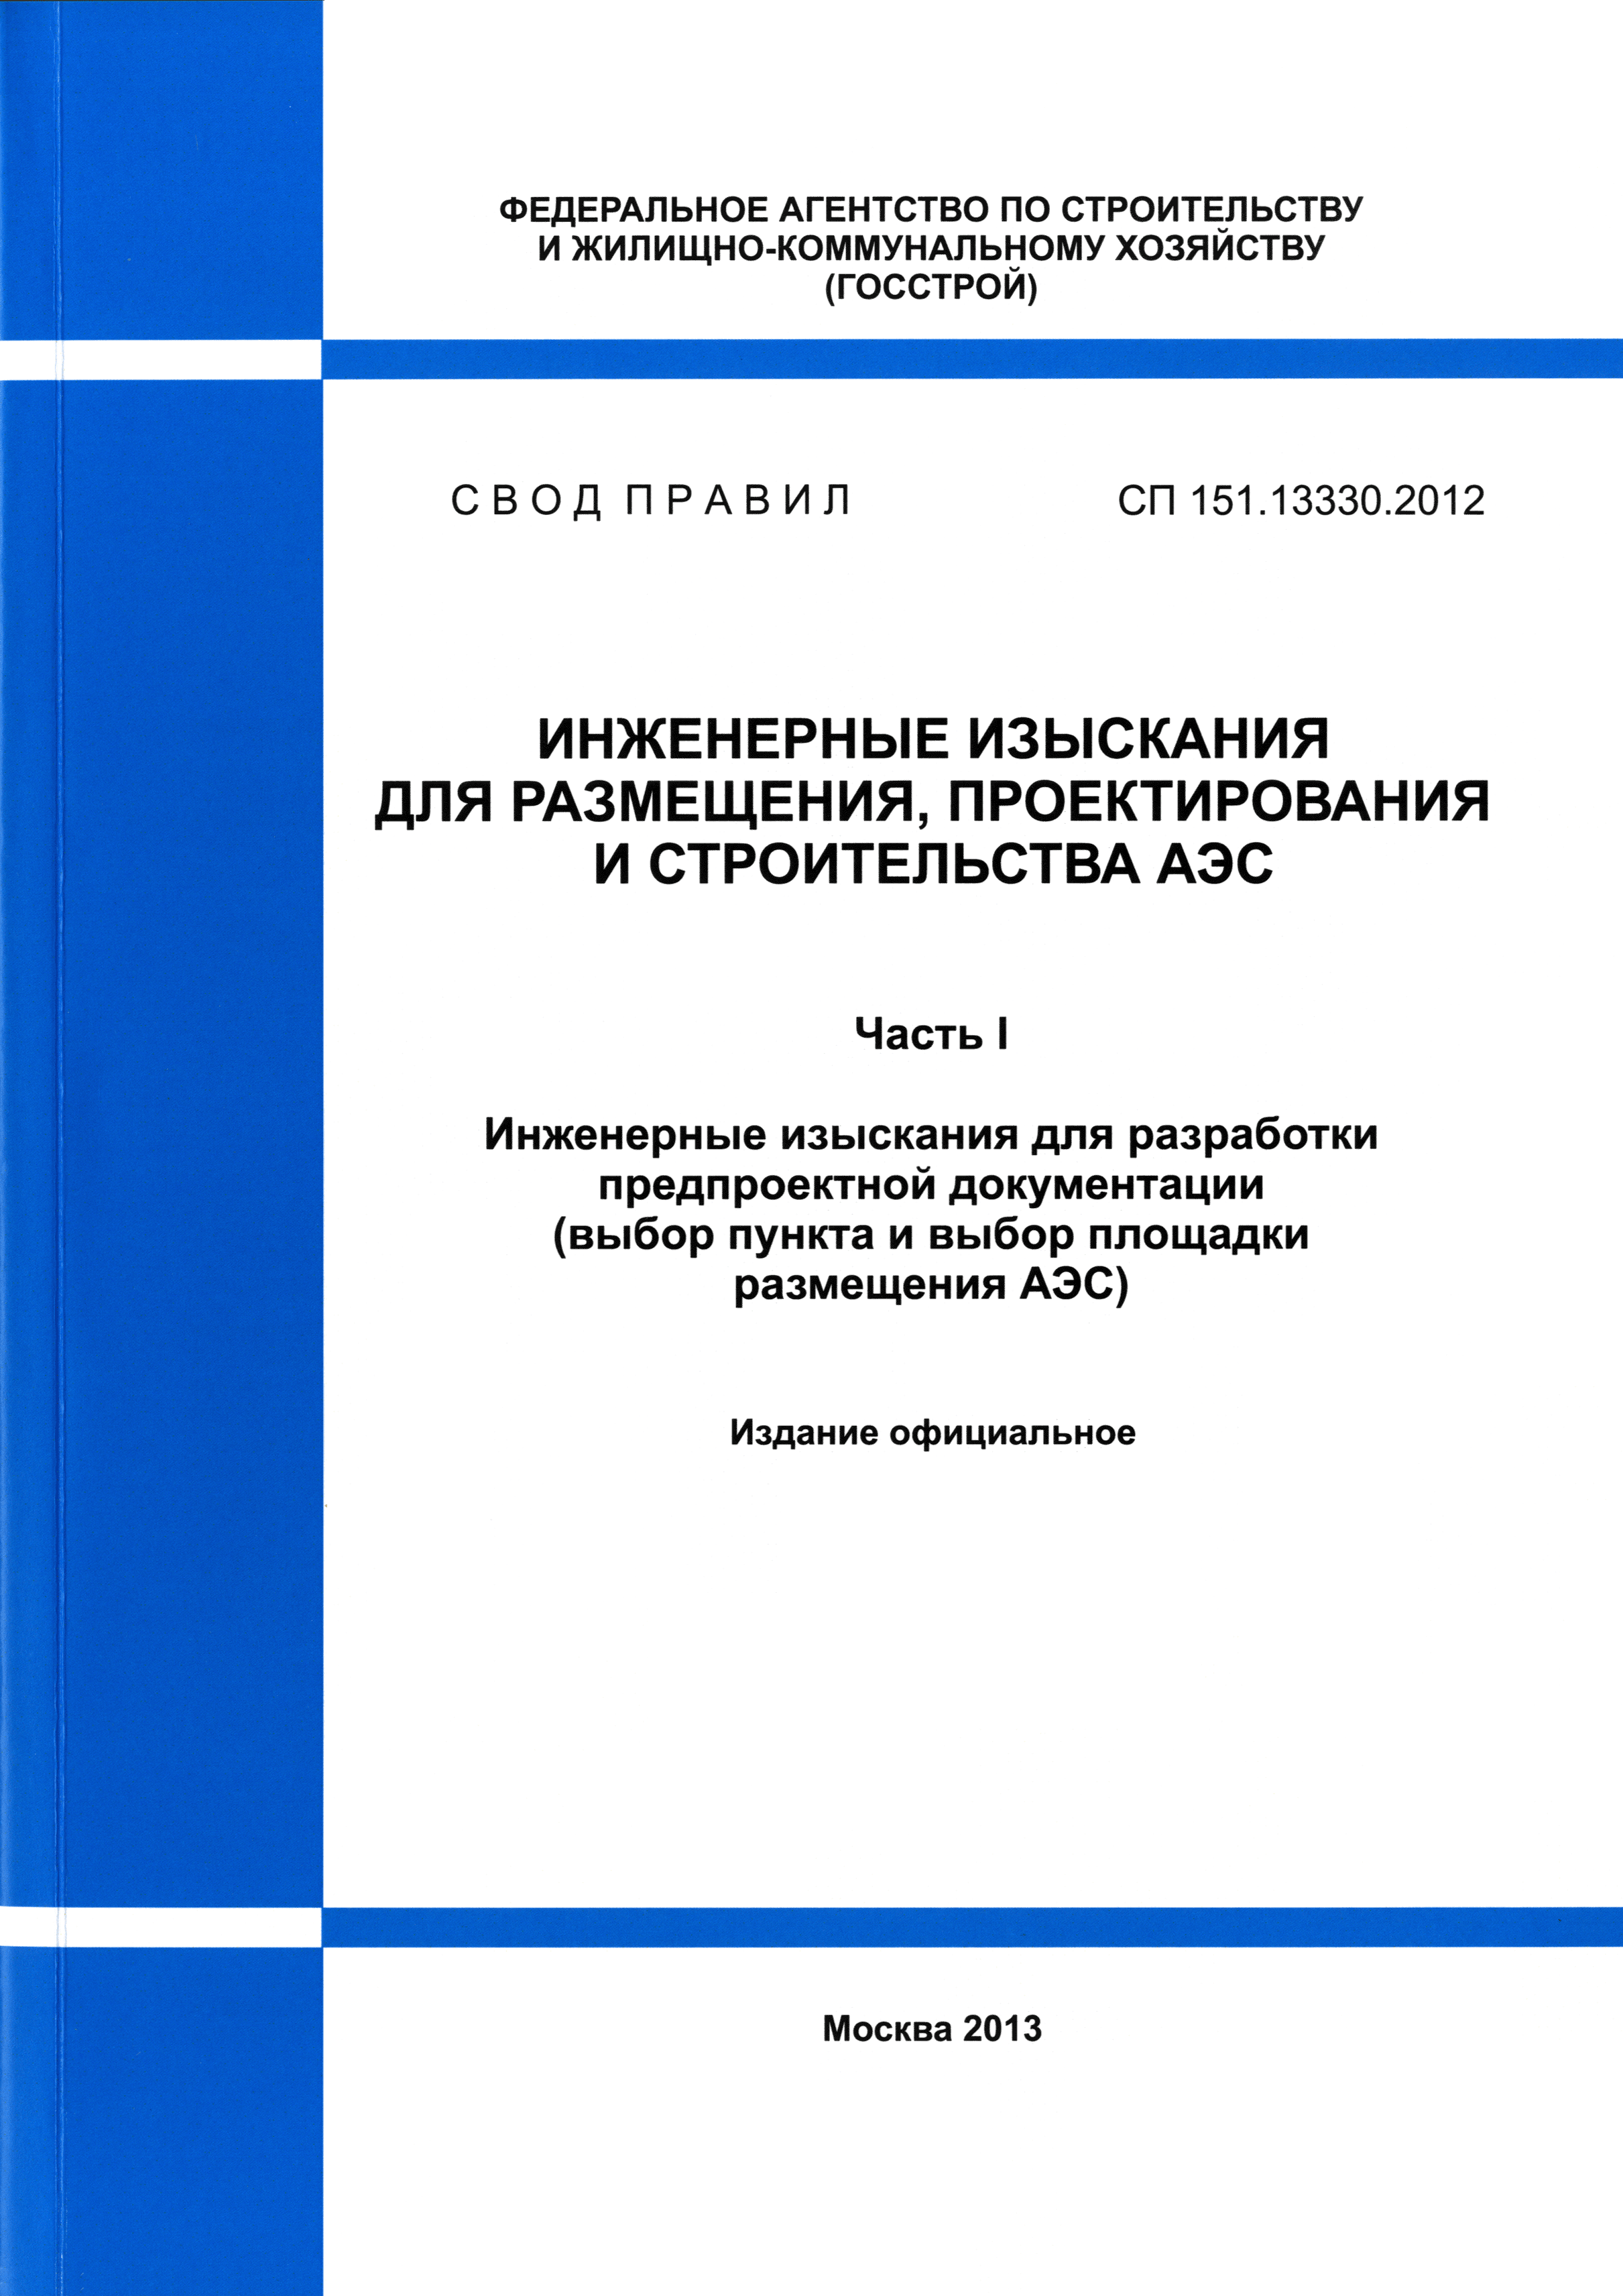 СП 151.13330.2012